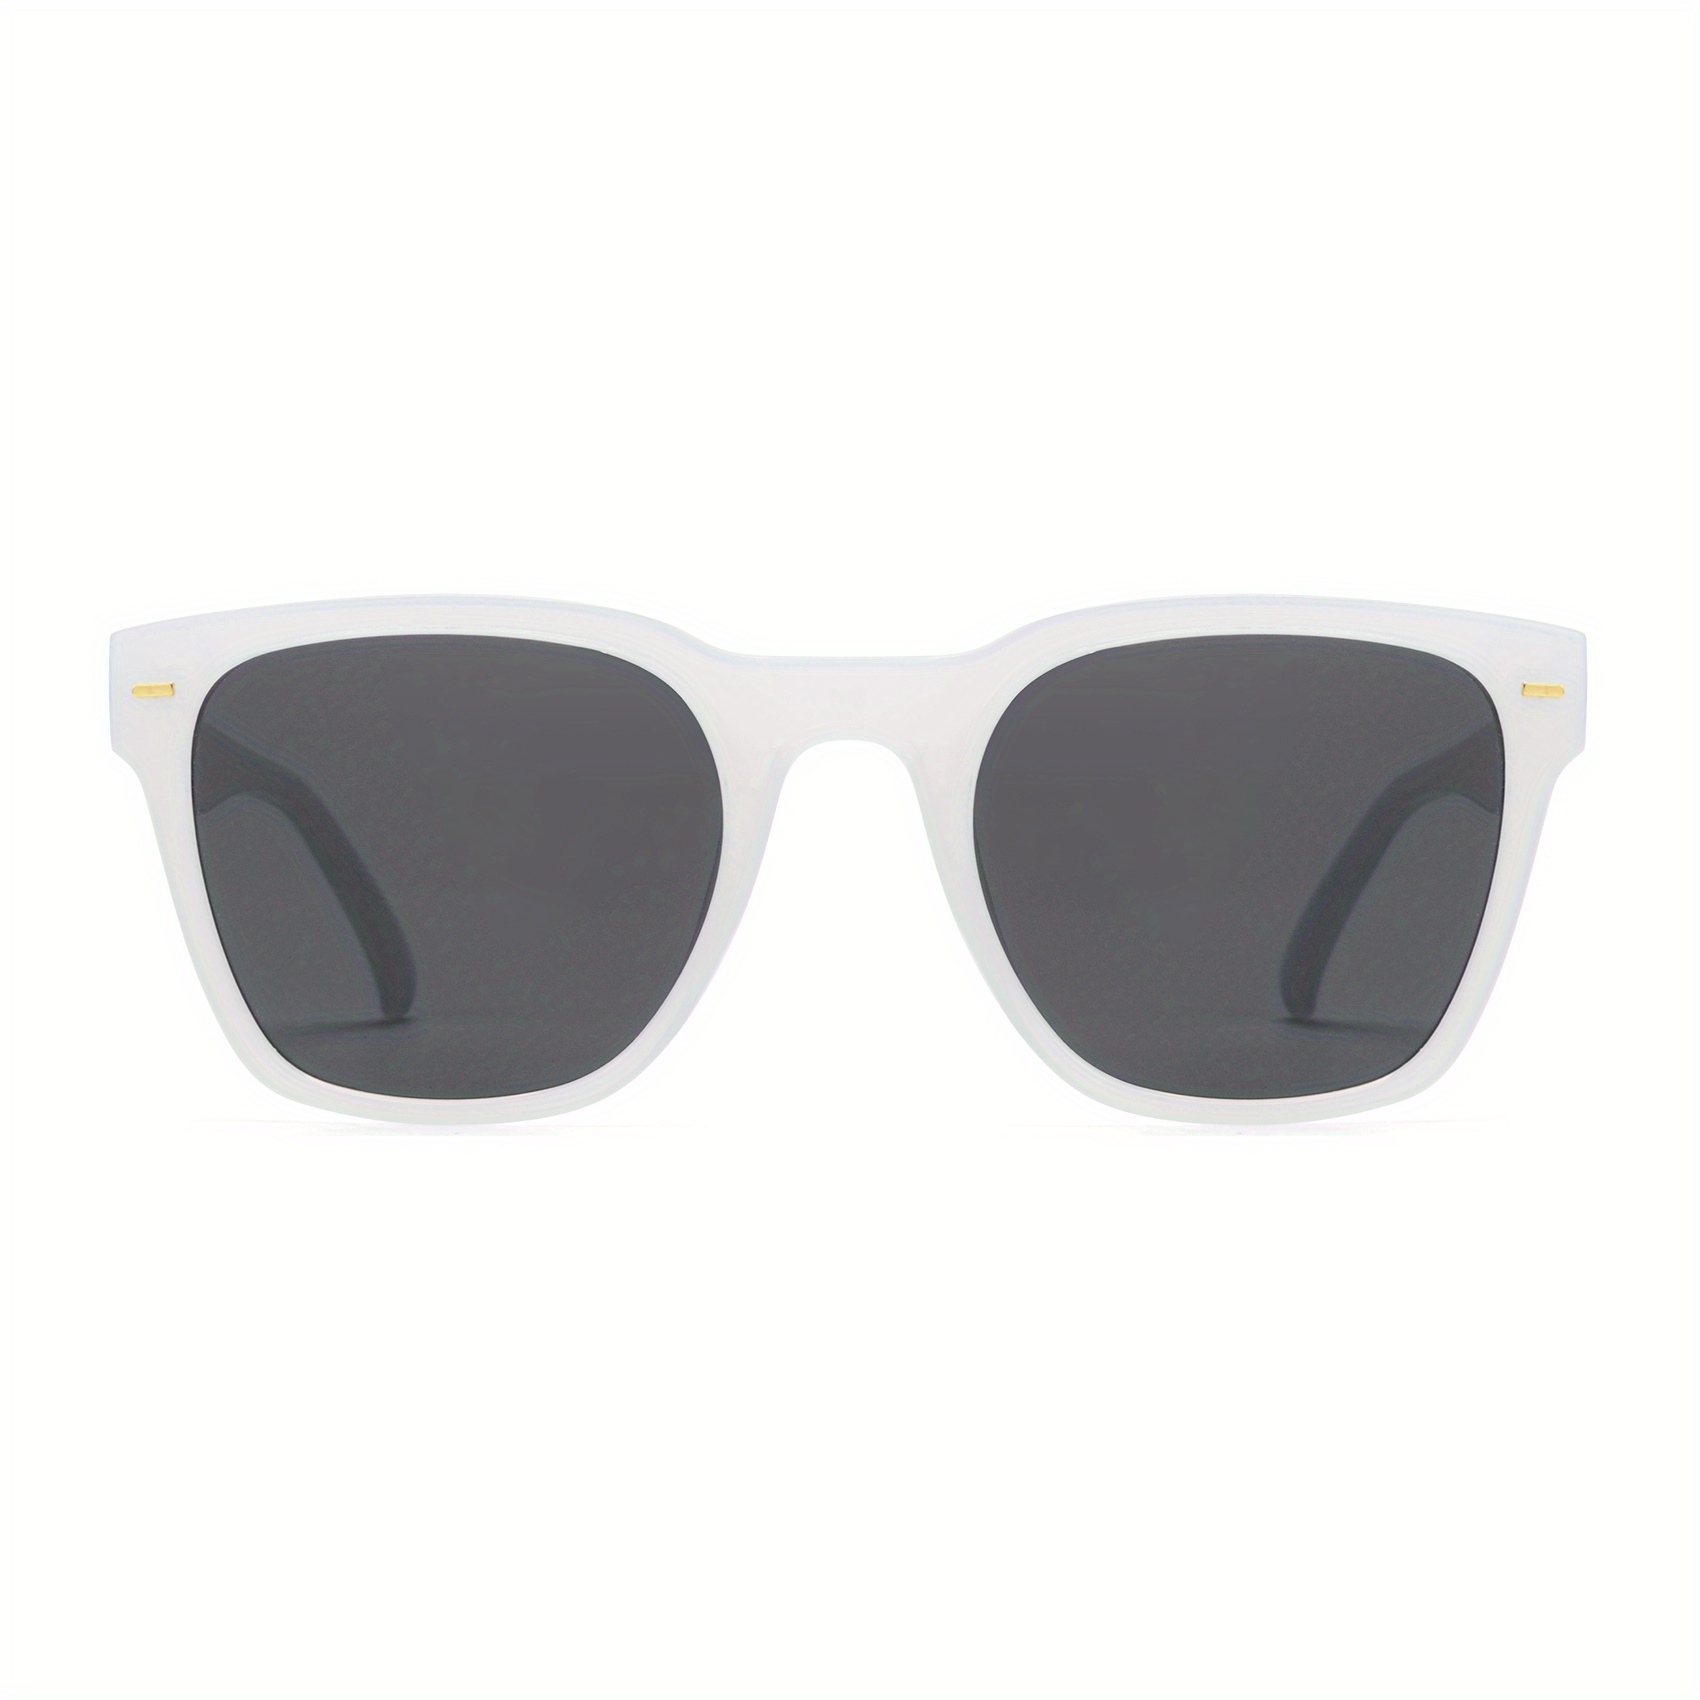 OUWEN Gafas De Sol Polarizadas Cuadradas Pequeñas Clásicas Para Hombres,  Gafas De Sol De Colores Mixtos Retro Protección UV400 Marco Blanco / Lentes  G